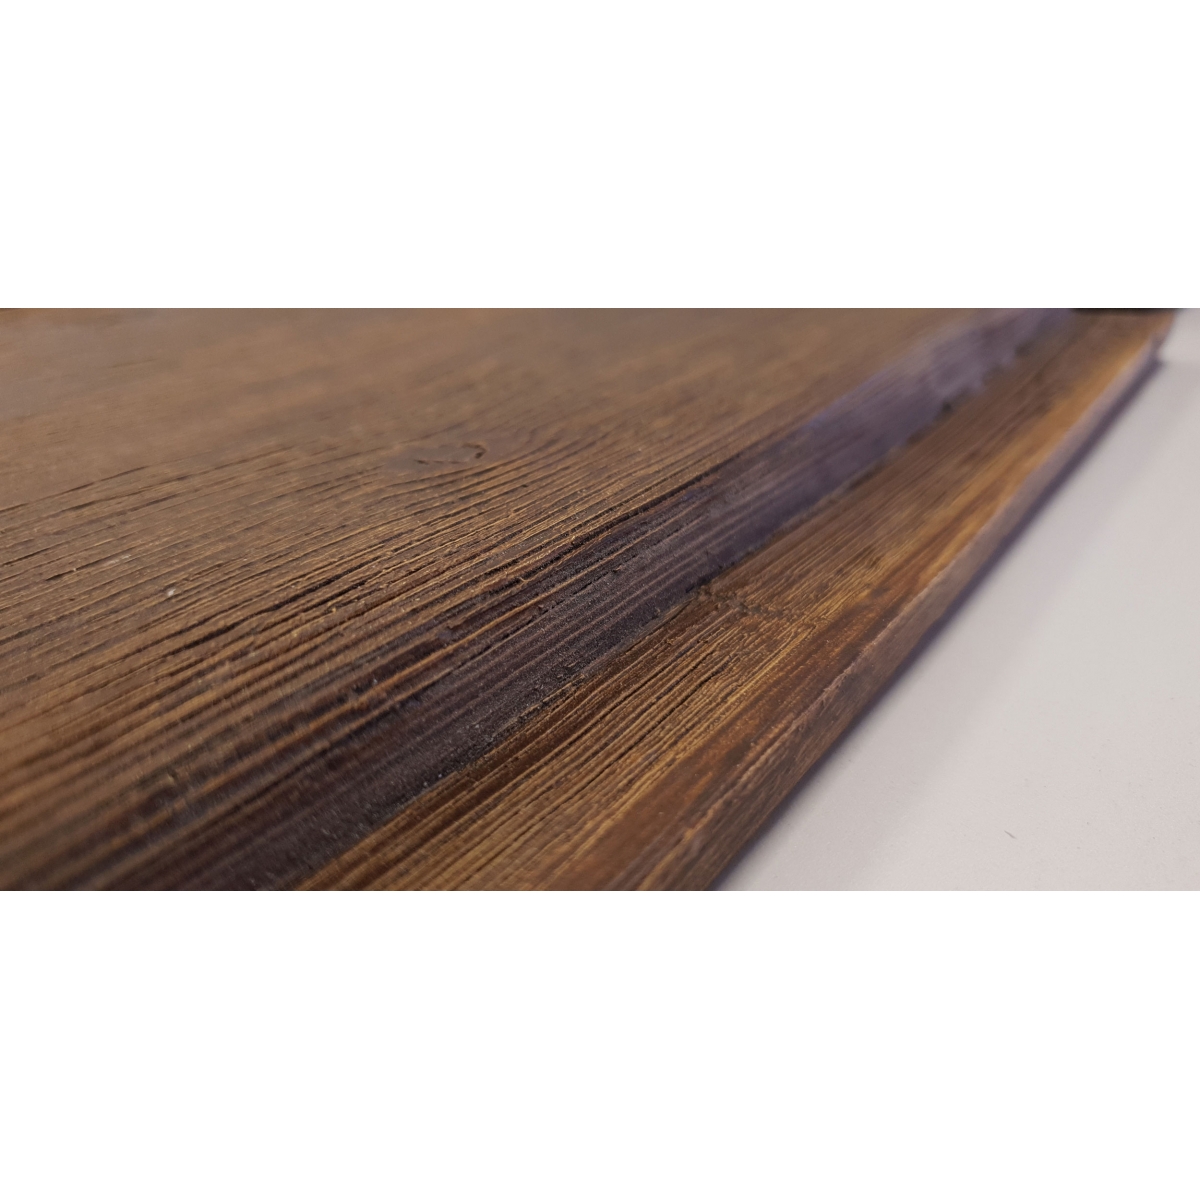 Vigas imitación madera de poliuretano La Viguería - Panel rústico sin lamas imitación madera de 400x62cm